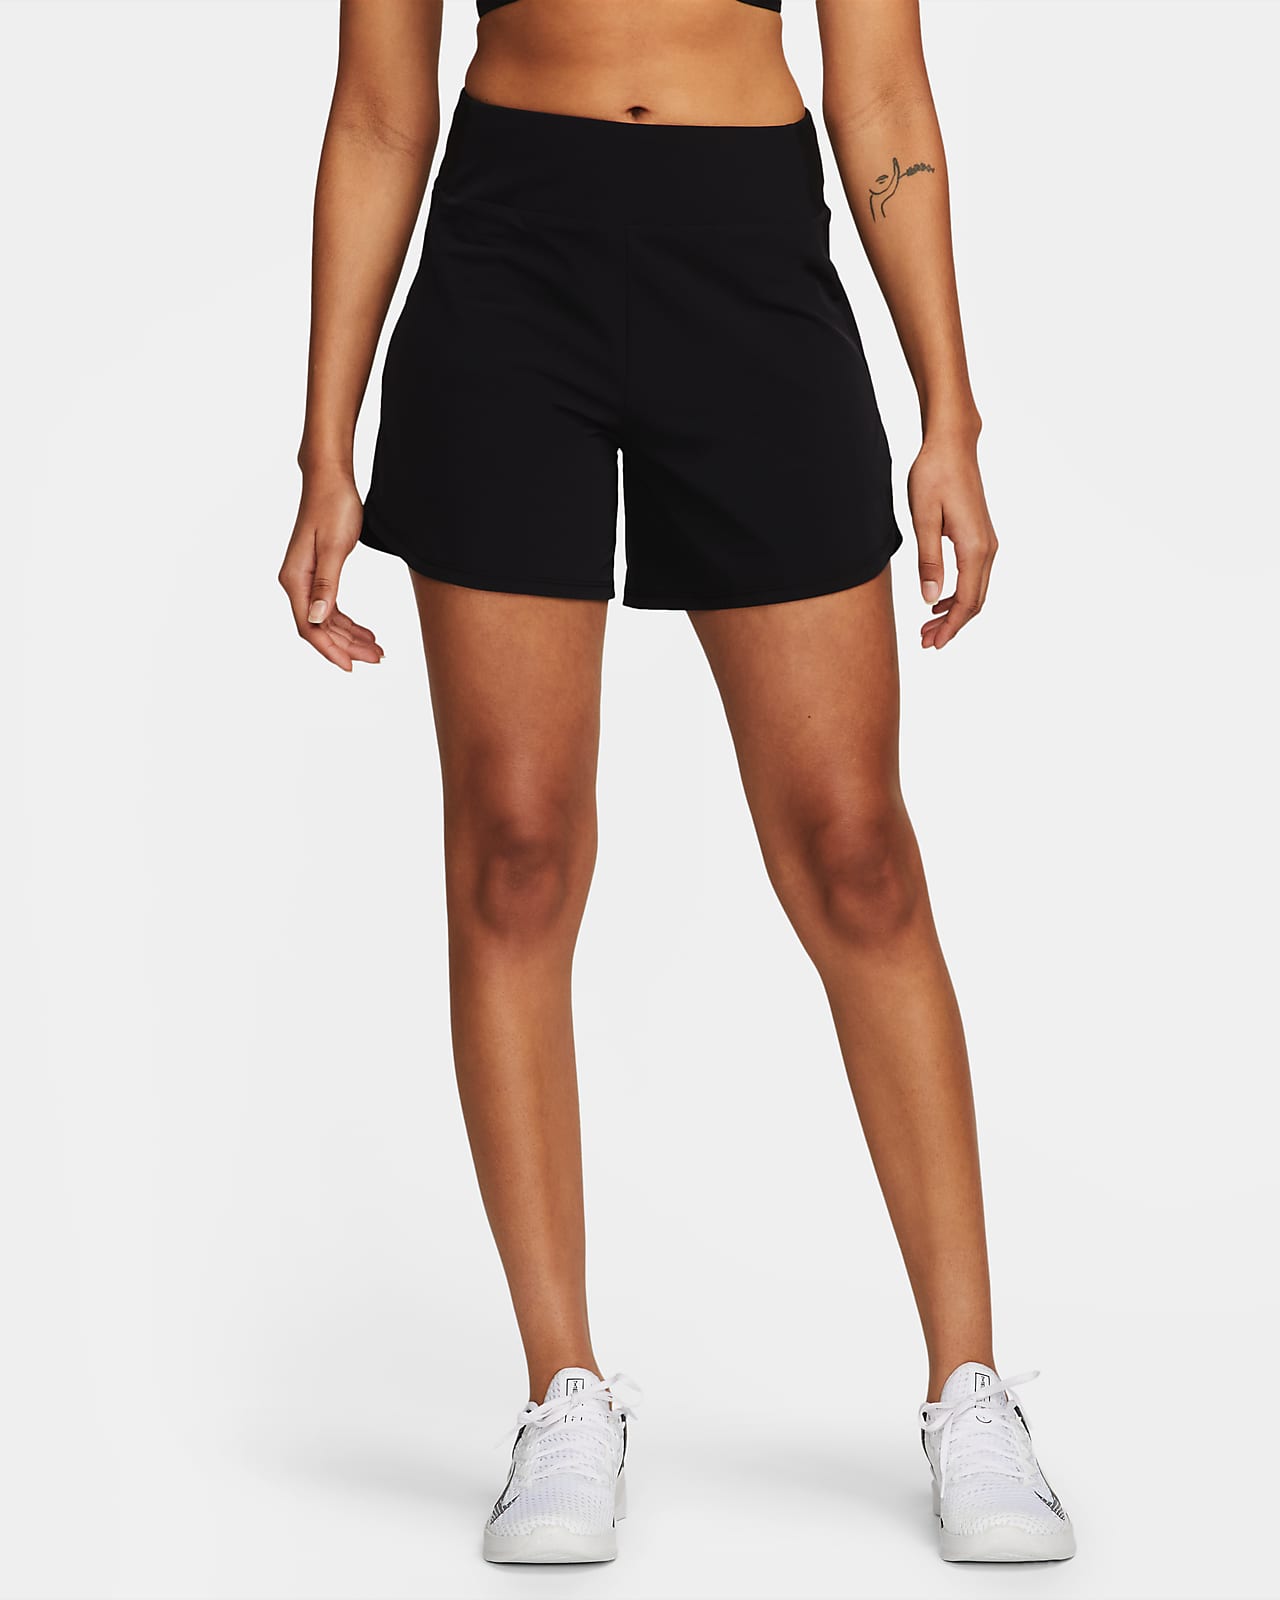 Short Dri-FIT taille mi-haute 13 cm avec sous-short intégré Nike Bliss pour femme